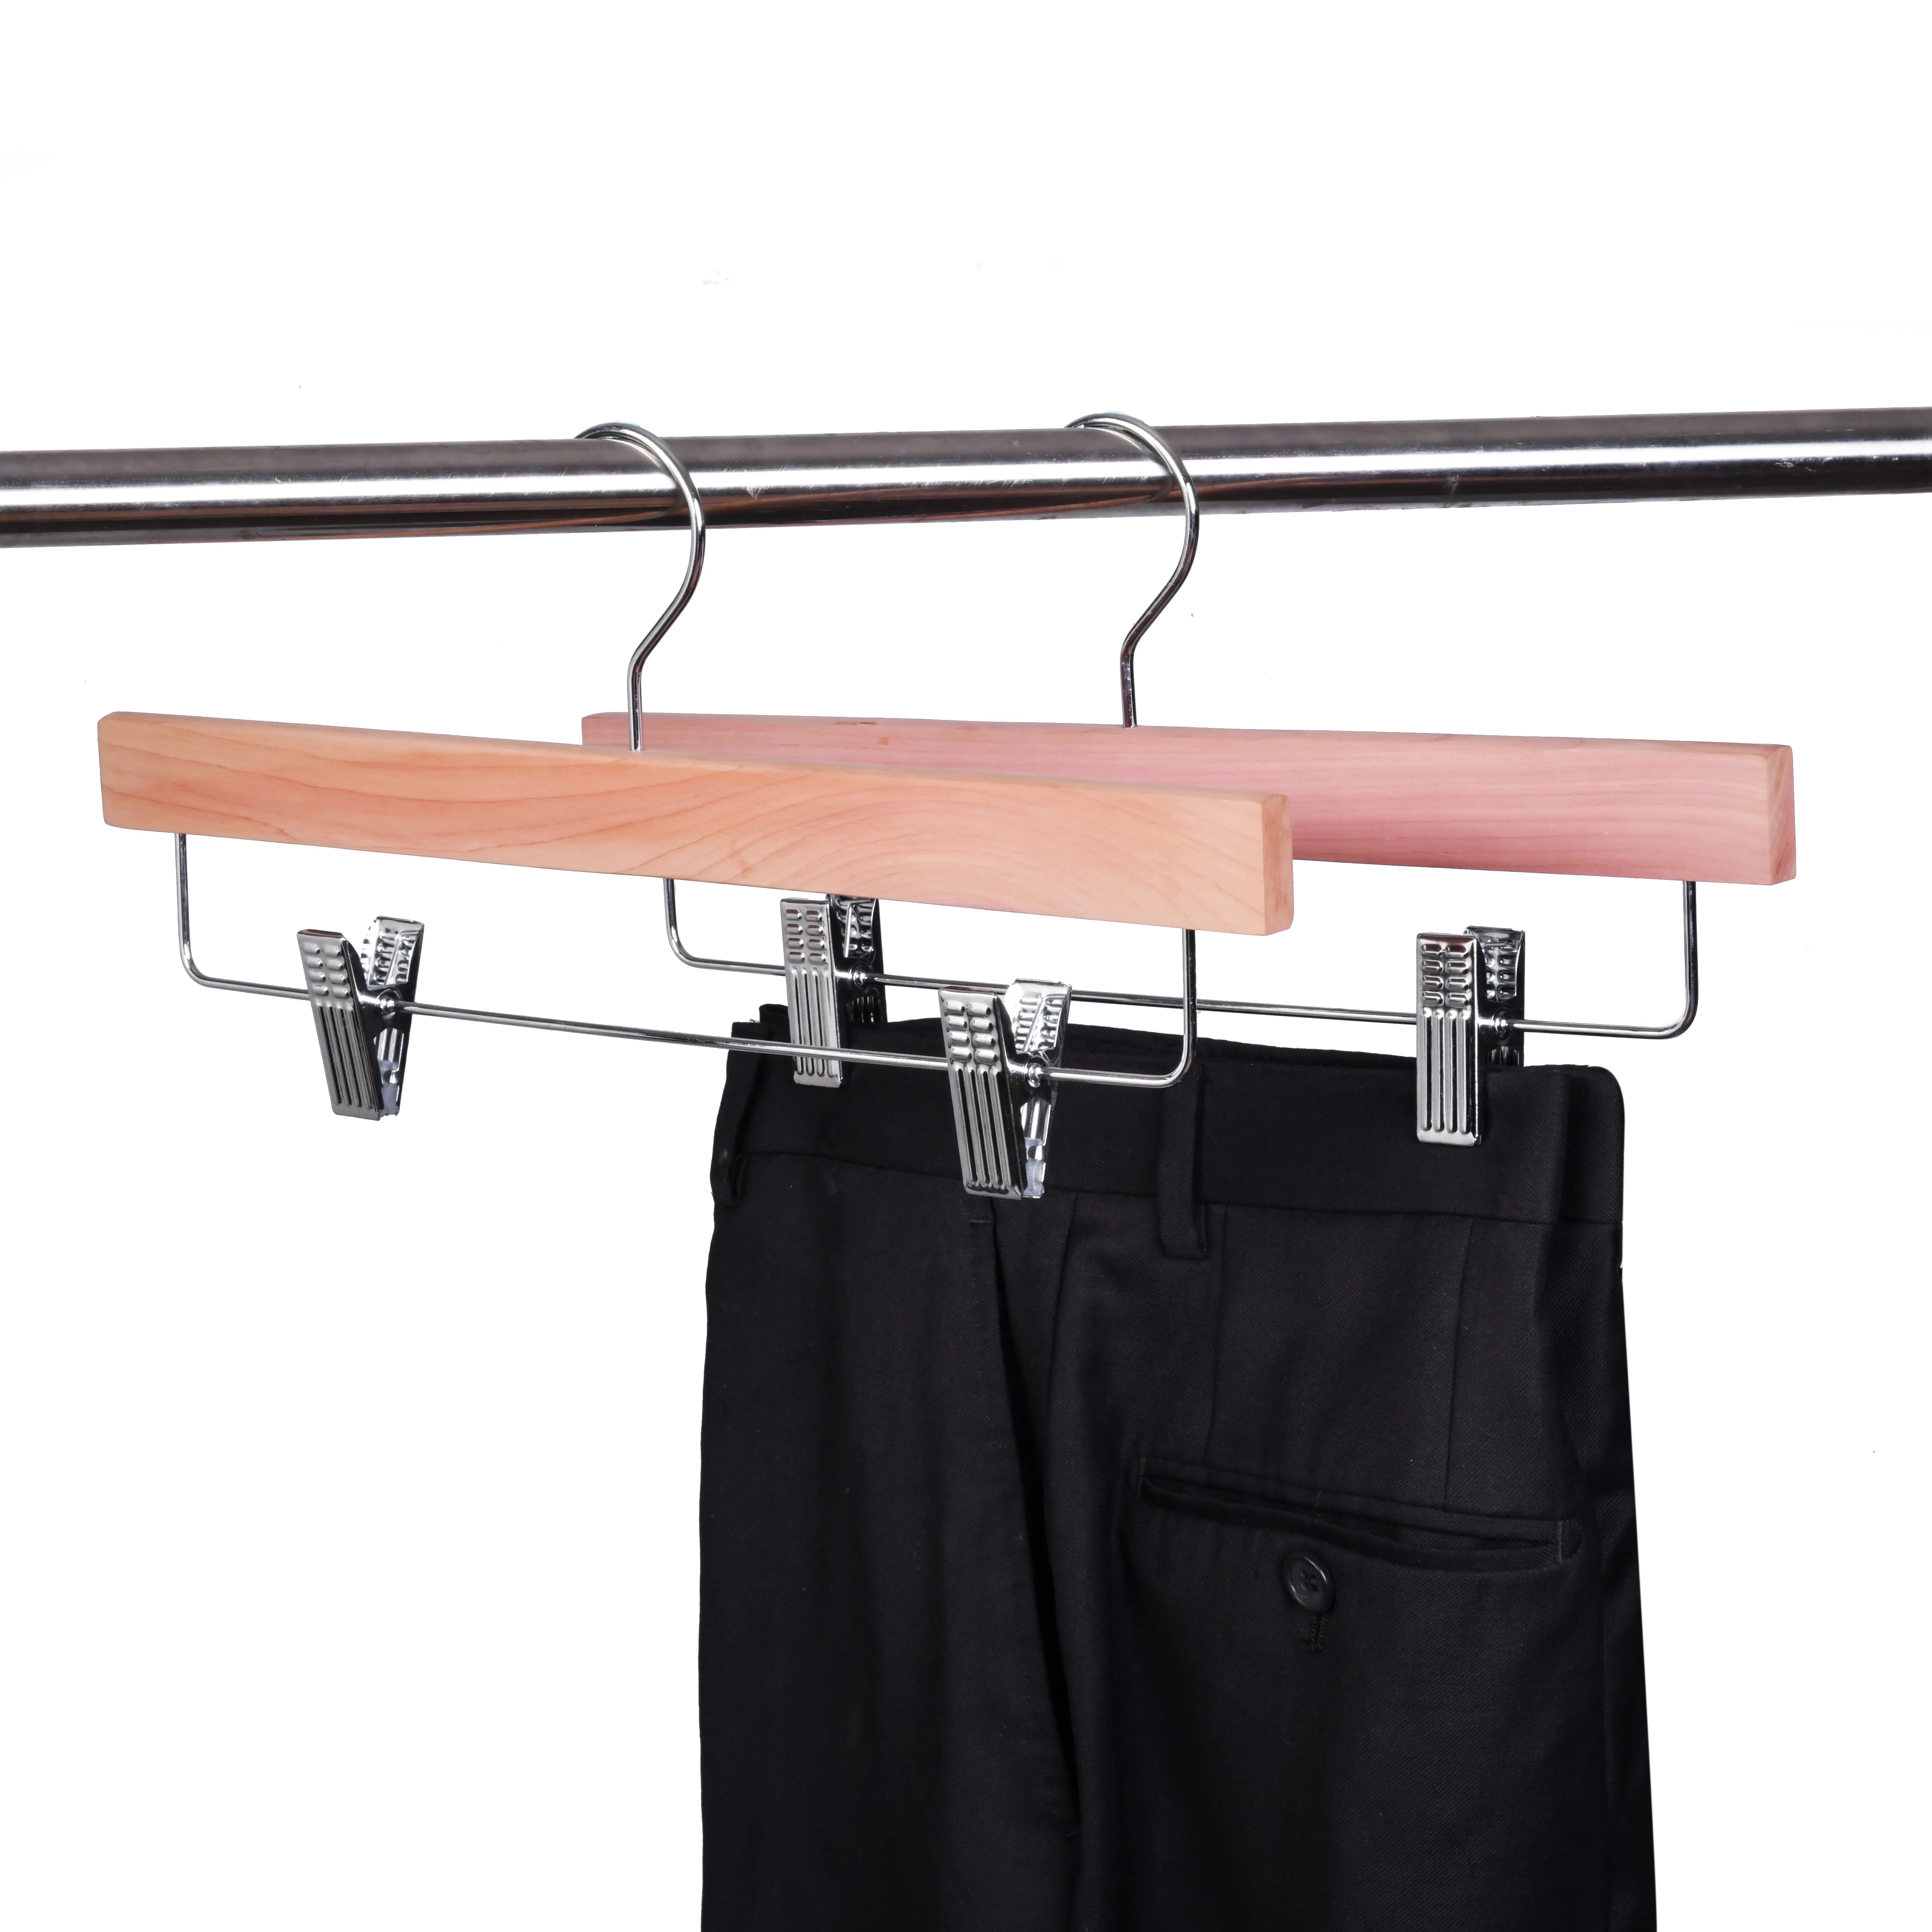 
TS1011 Amazon hot sale natural cedar pants hangers 